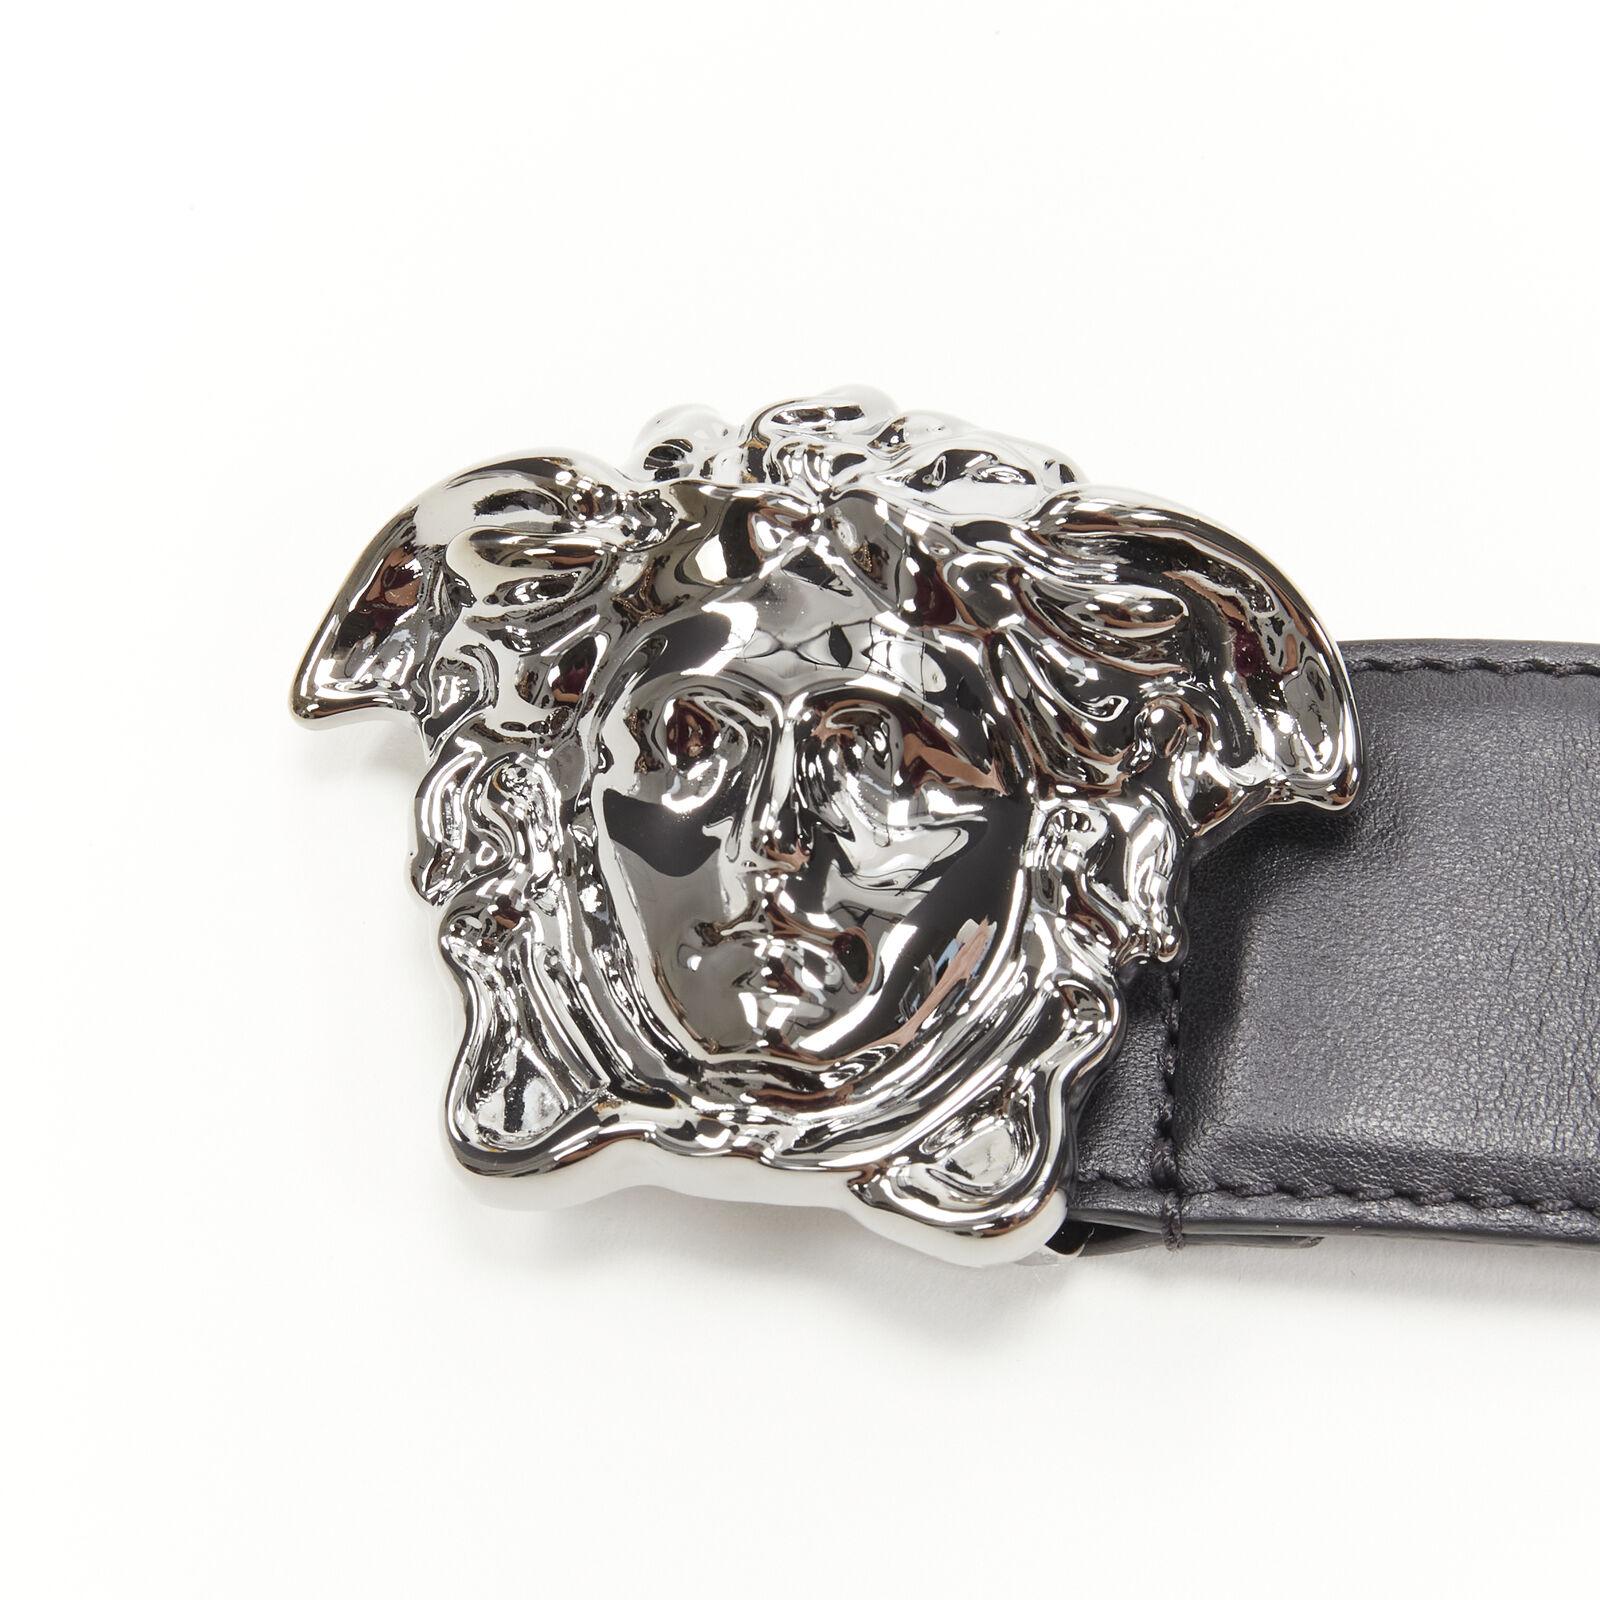 new VERSACE La Medusa ruthenium silver buckle black leather belt 115cm 44-48